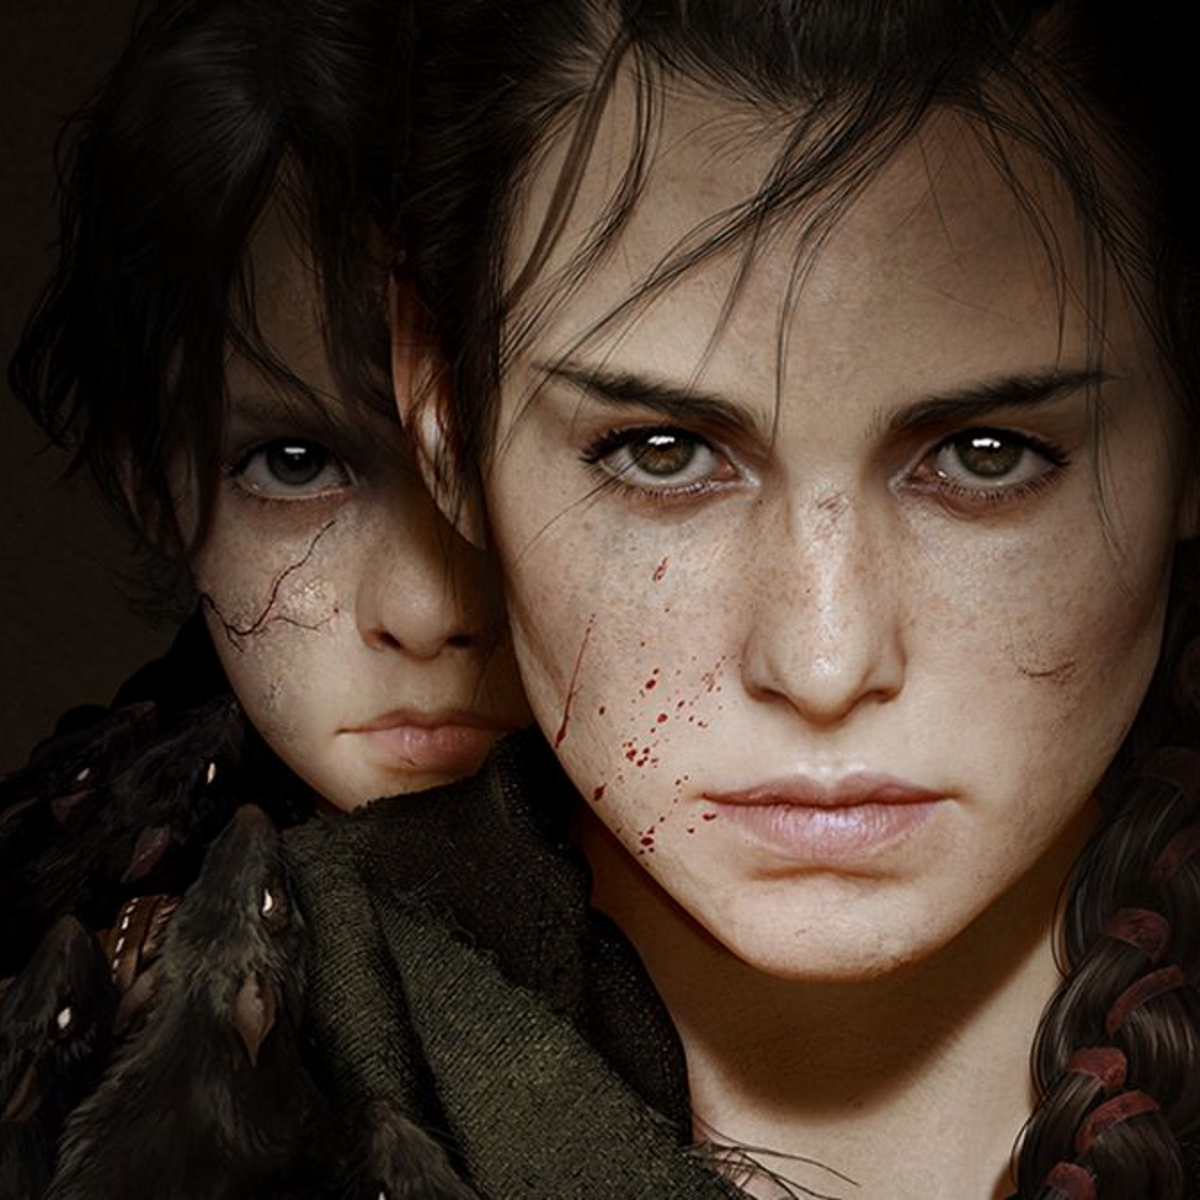 A Plague Tale: Requiem review: gorgeous sequel has growing pains